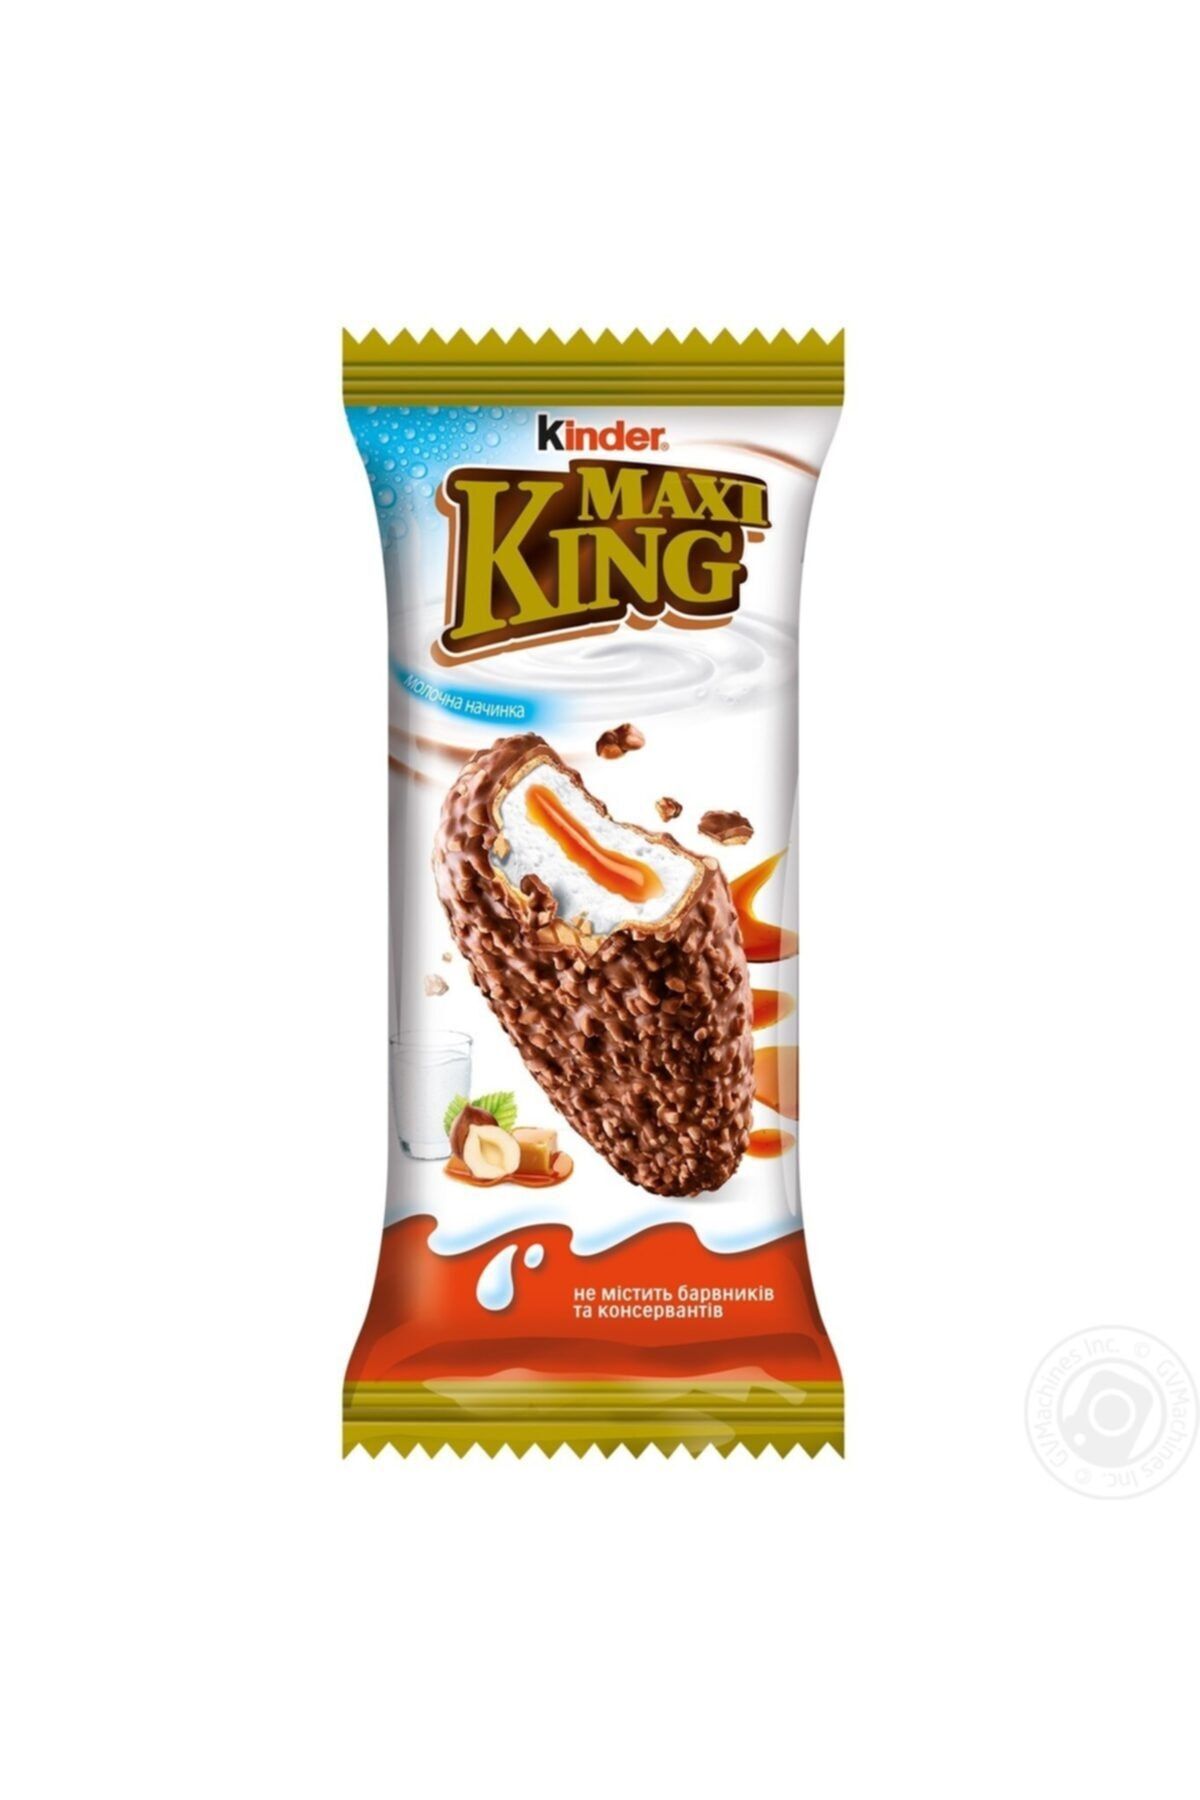 Kinder Maxi King Sütlü Çikolata Kaplı Waffle 35gr